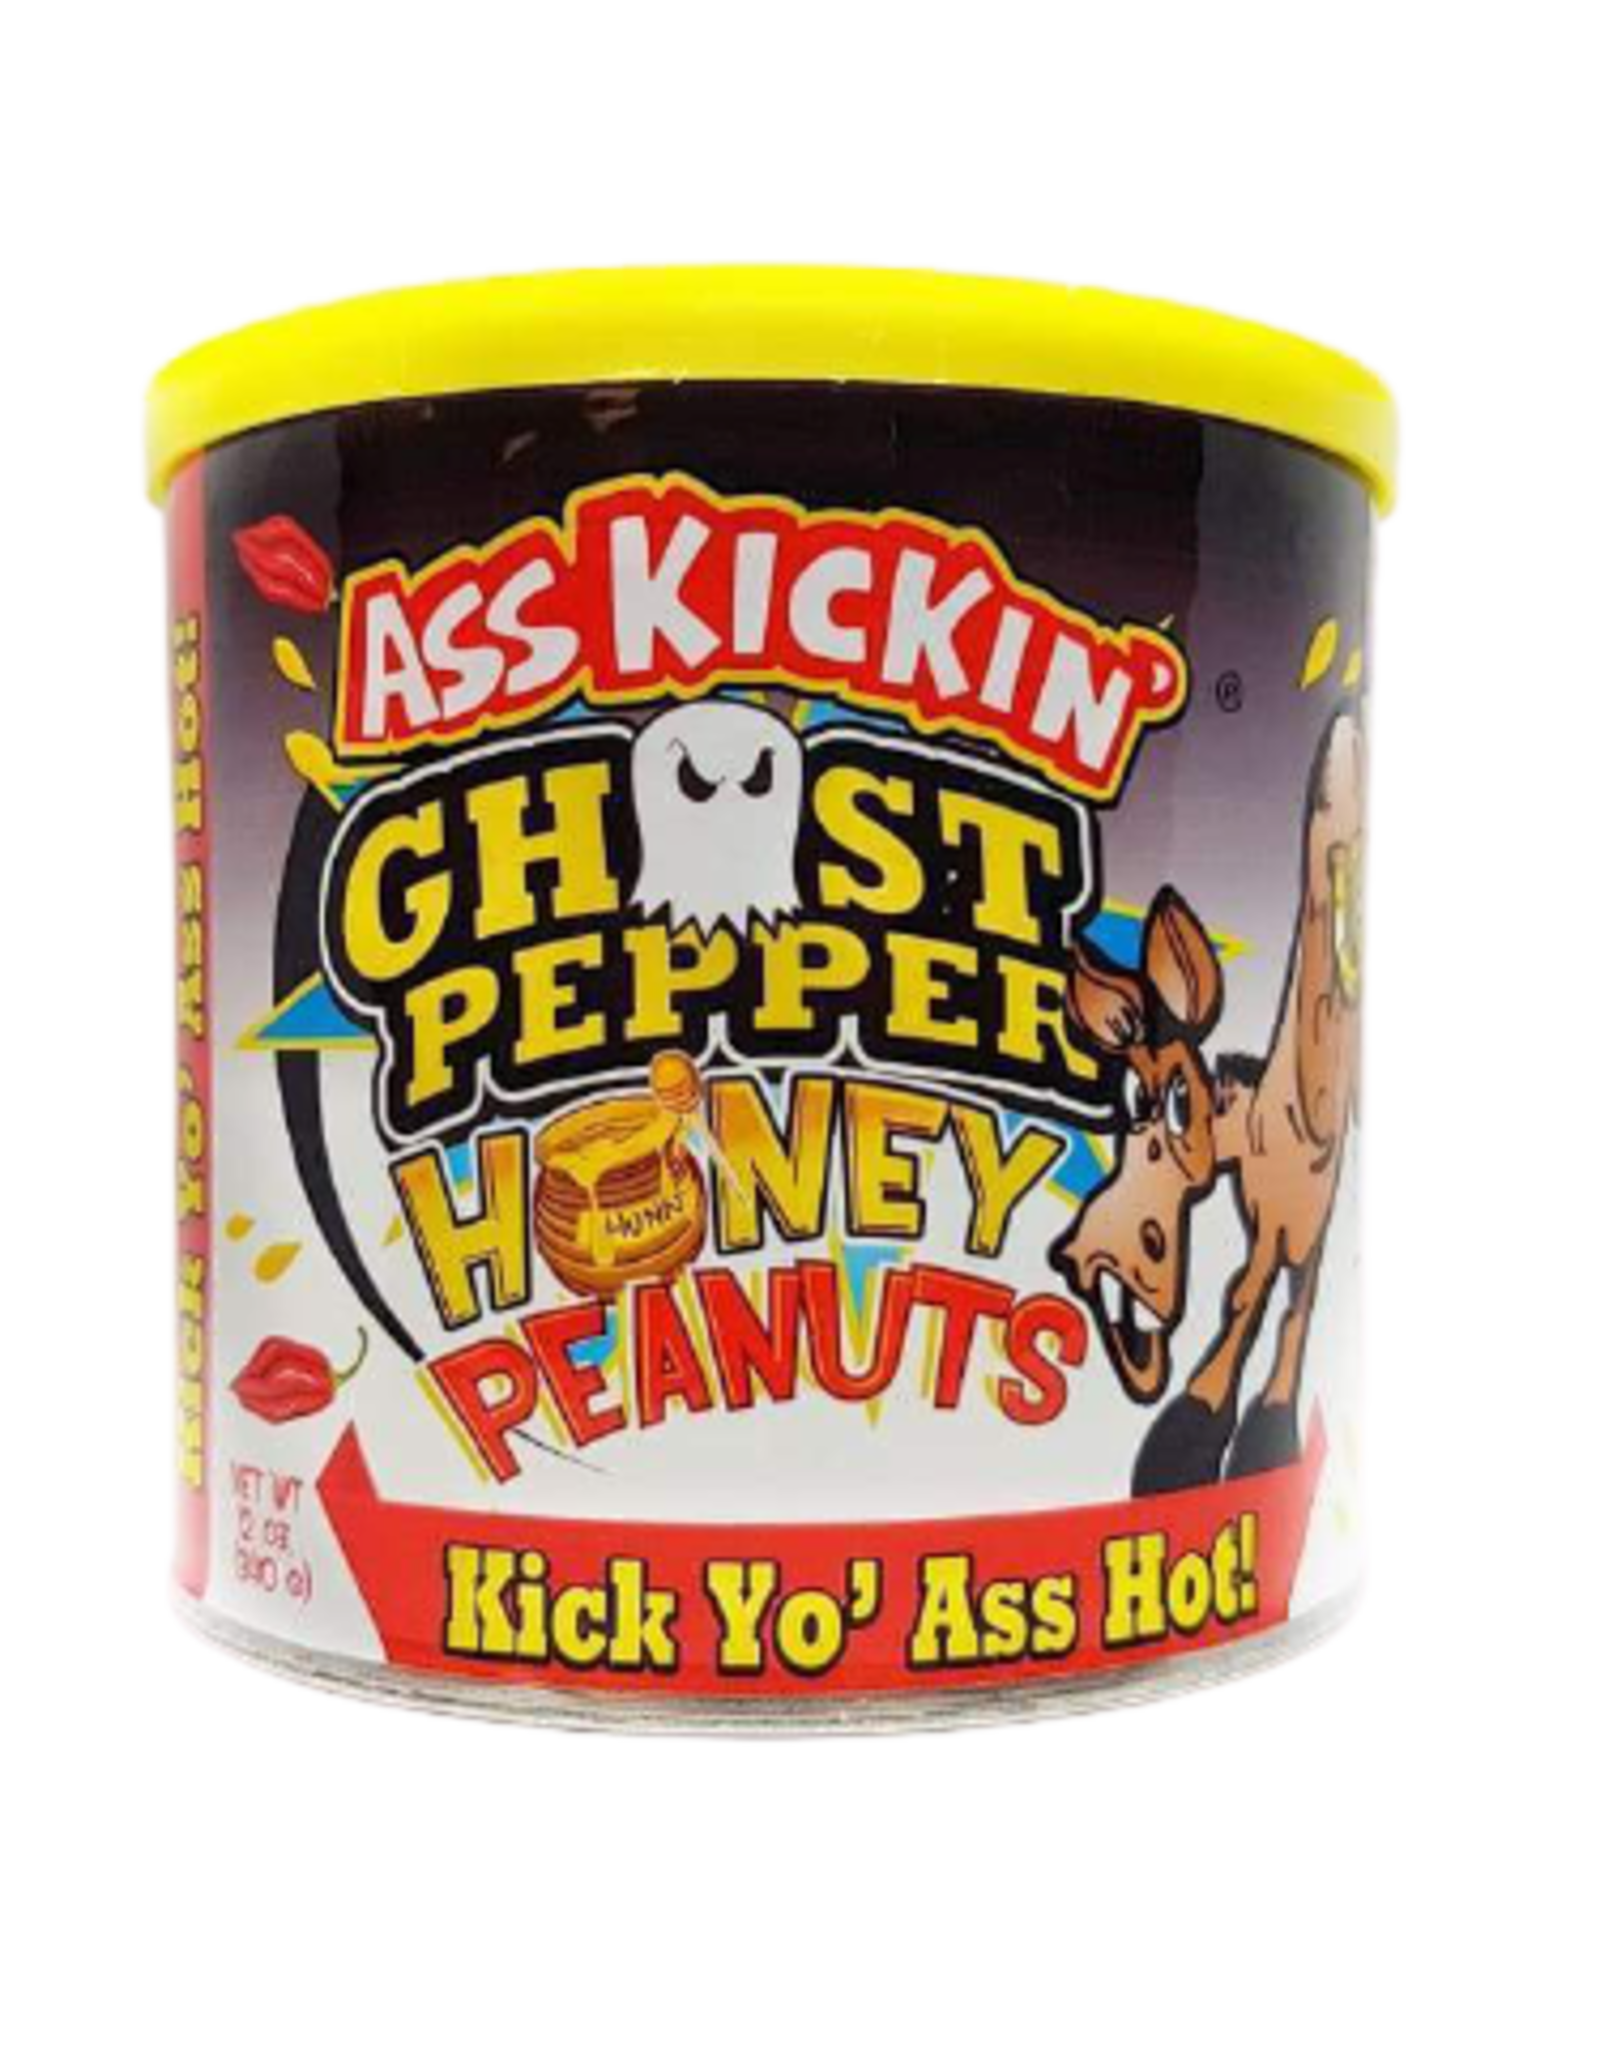 Ass Kickin' Ghost Pepper Honey Peanuts